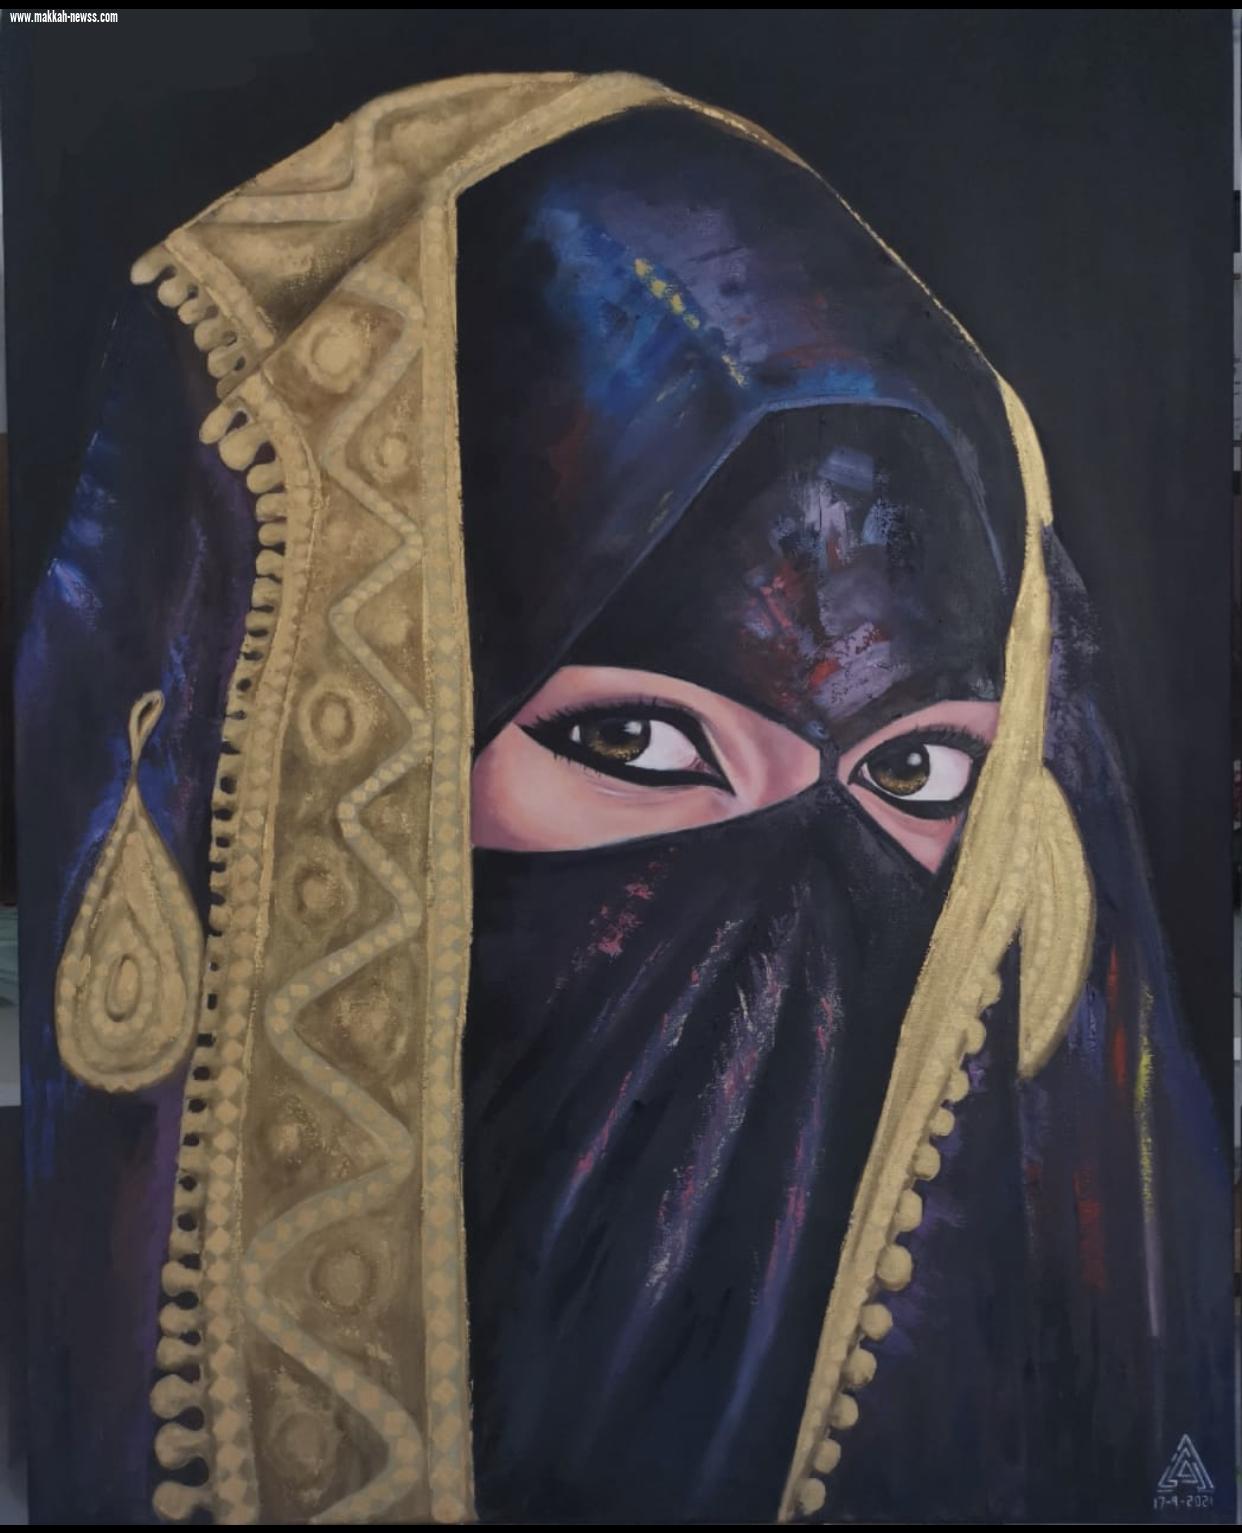 الفنانة التشكيلية أروى الظيفي في ضيافة صحيفة صوت مكة الاجتماعية.   الرسم عندي هواية ومهارة اكتسبتها عن طريق الممارسة.